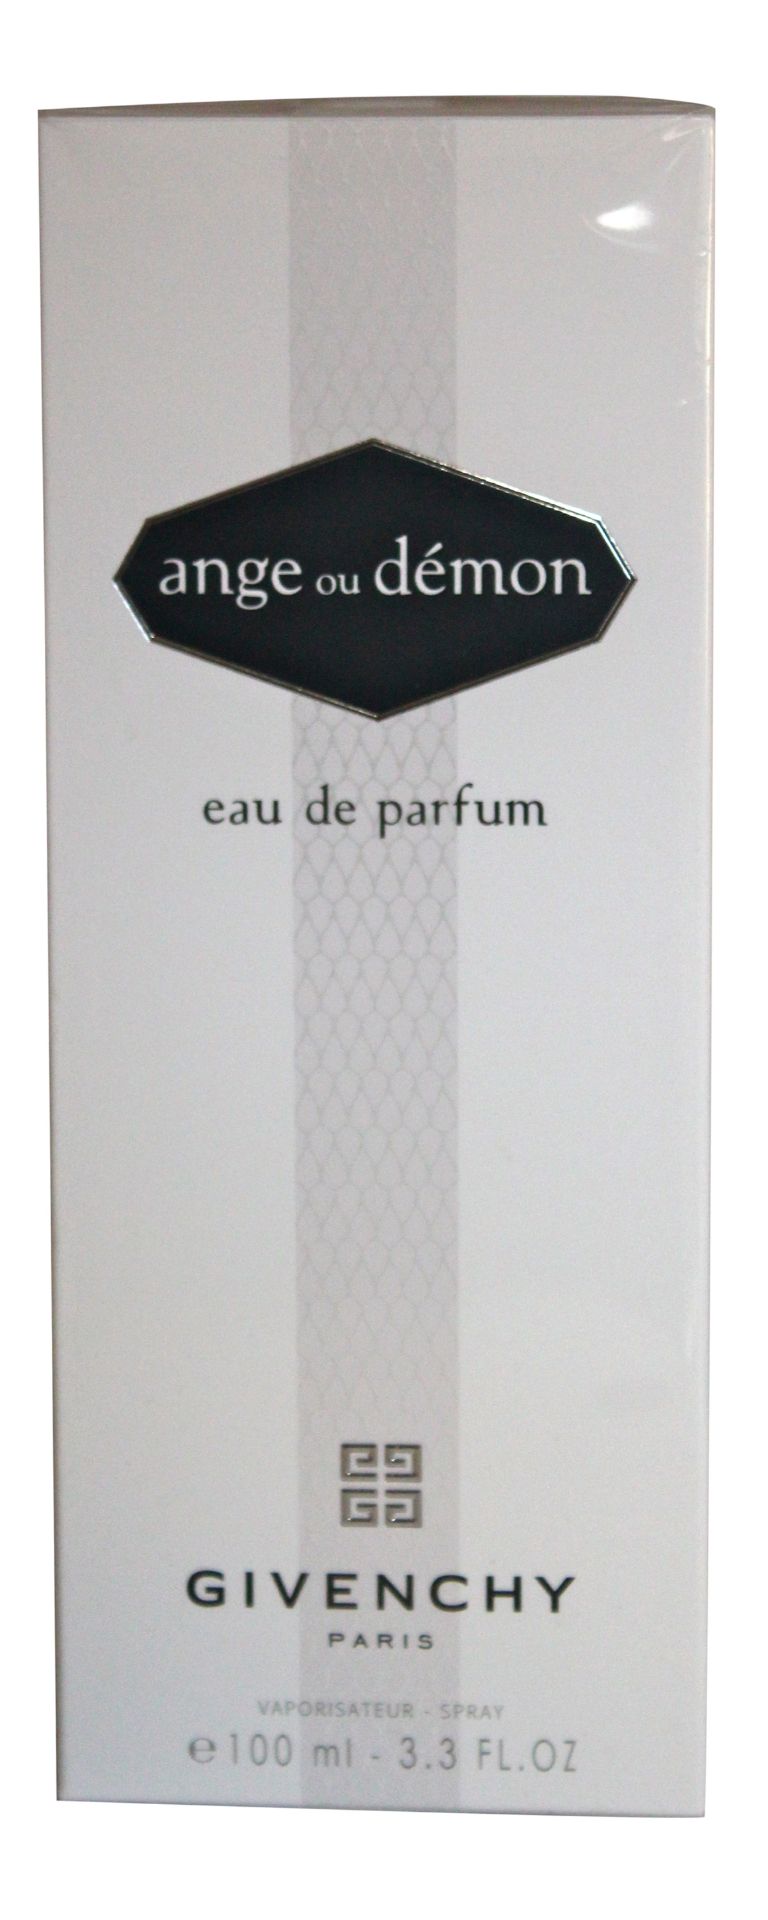 Ange Ou Demon 100ml EDP Spray for Women x 1 Unit - Image 3 of 3